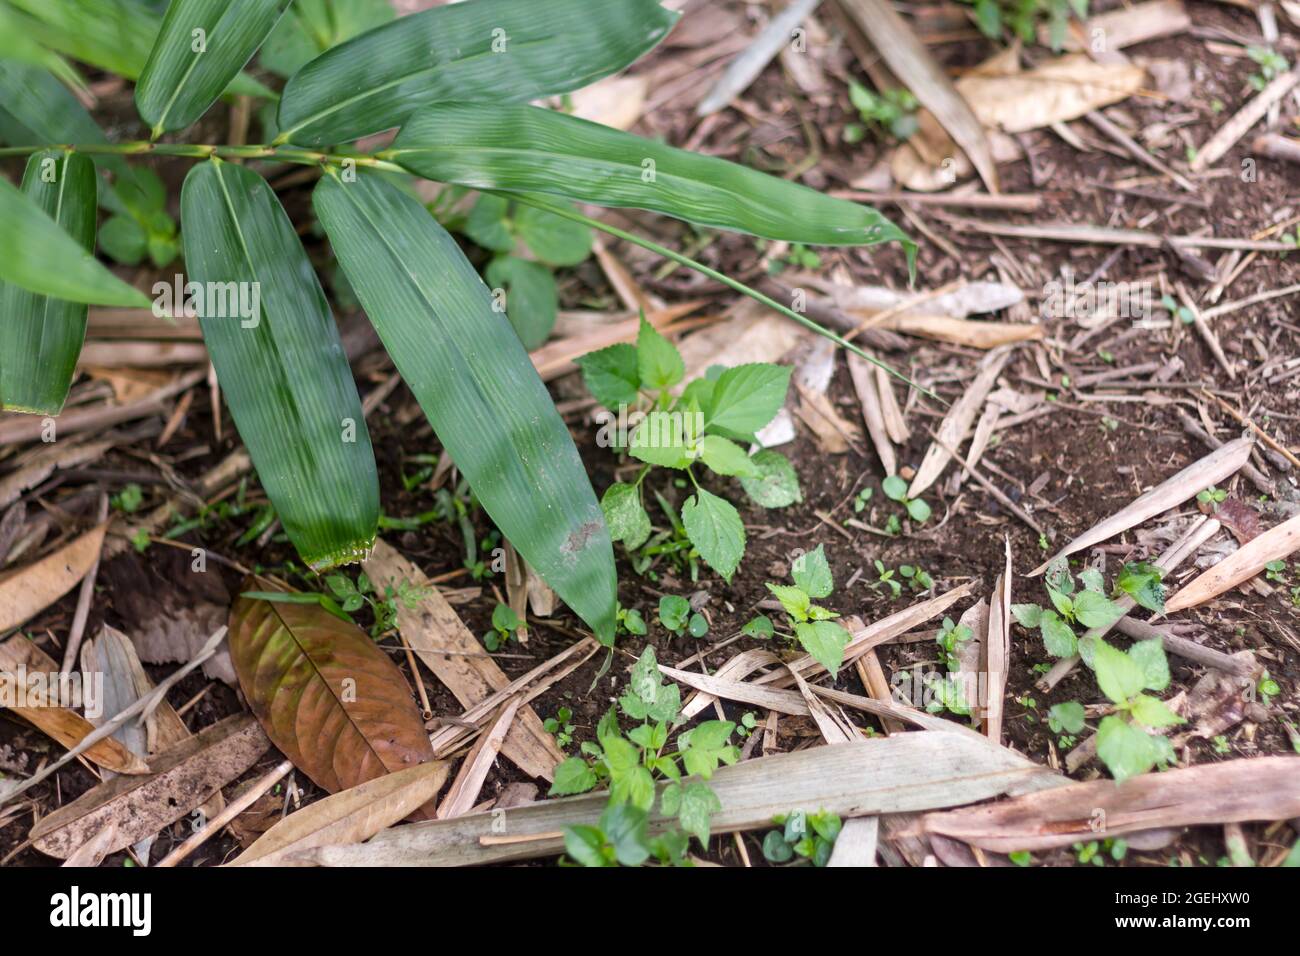 Le punte delle foglie di bambù sono verdi con un fondo di suolo marrone Foto Stock